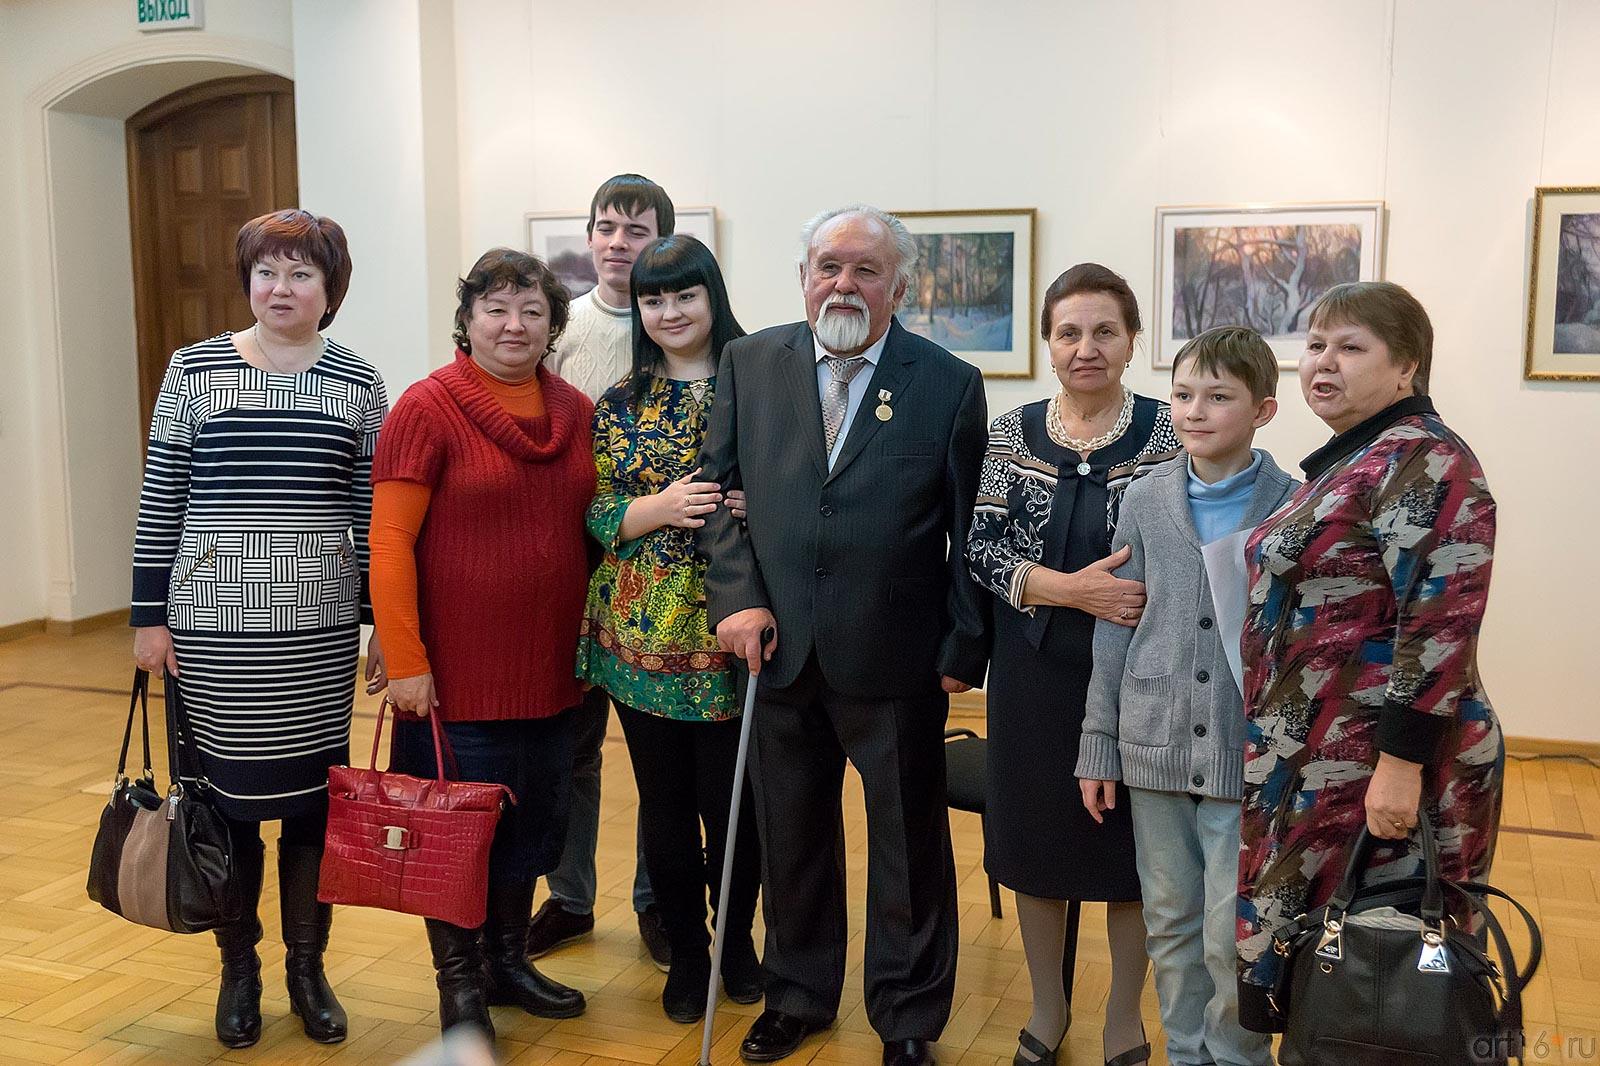 Суюров Ф.А. в окружении близких ::Суюров Фарид Абдрахманович. Открытие персональной выставки 30 января 2014